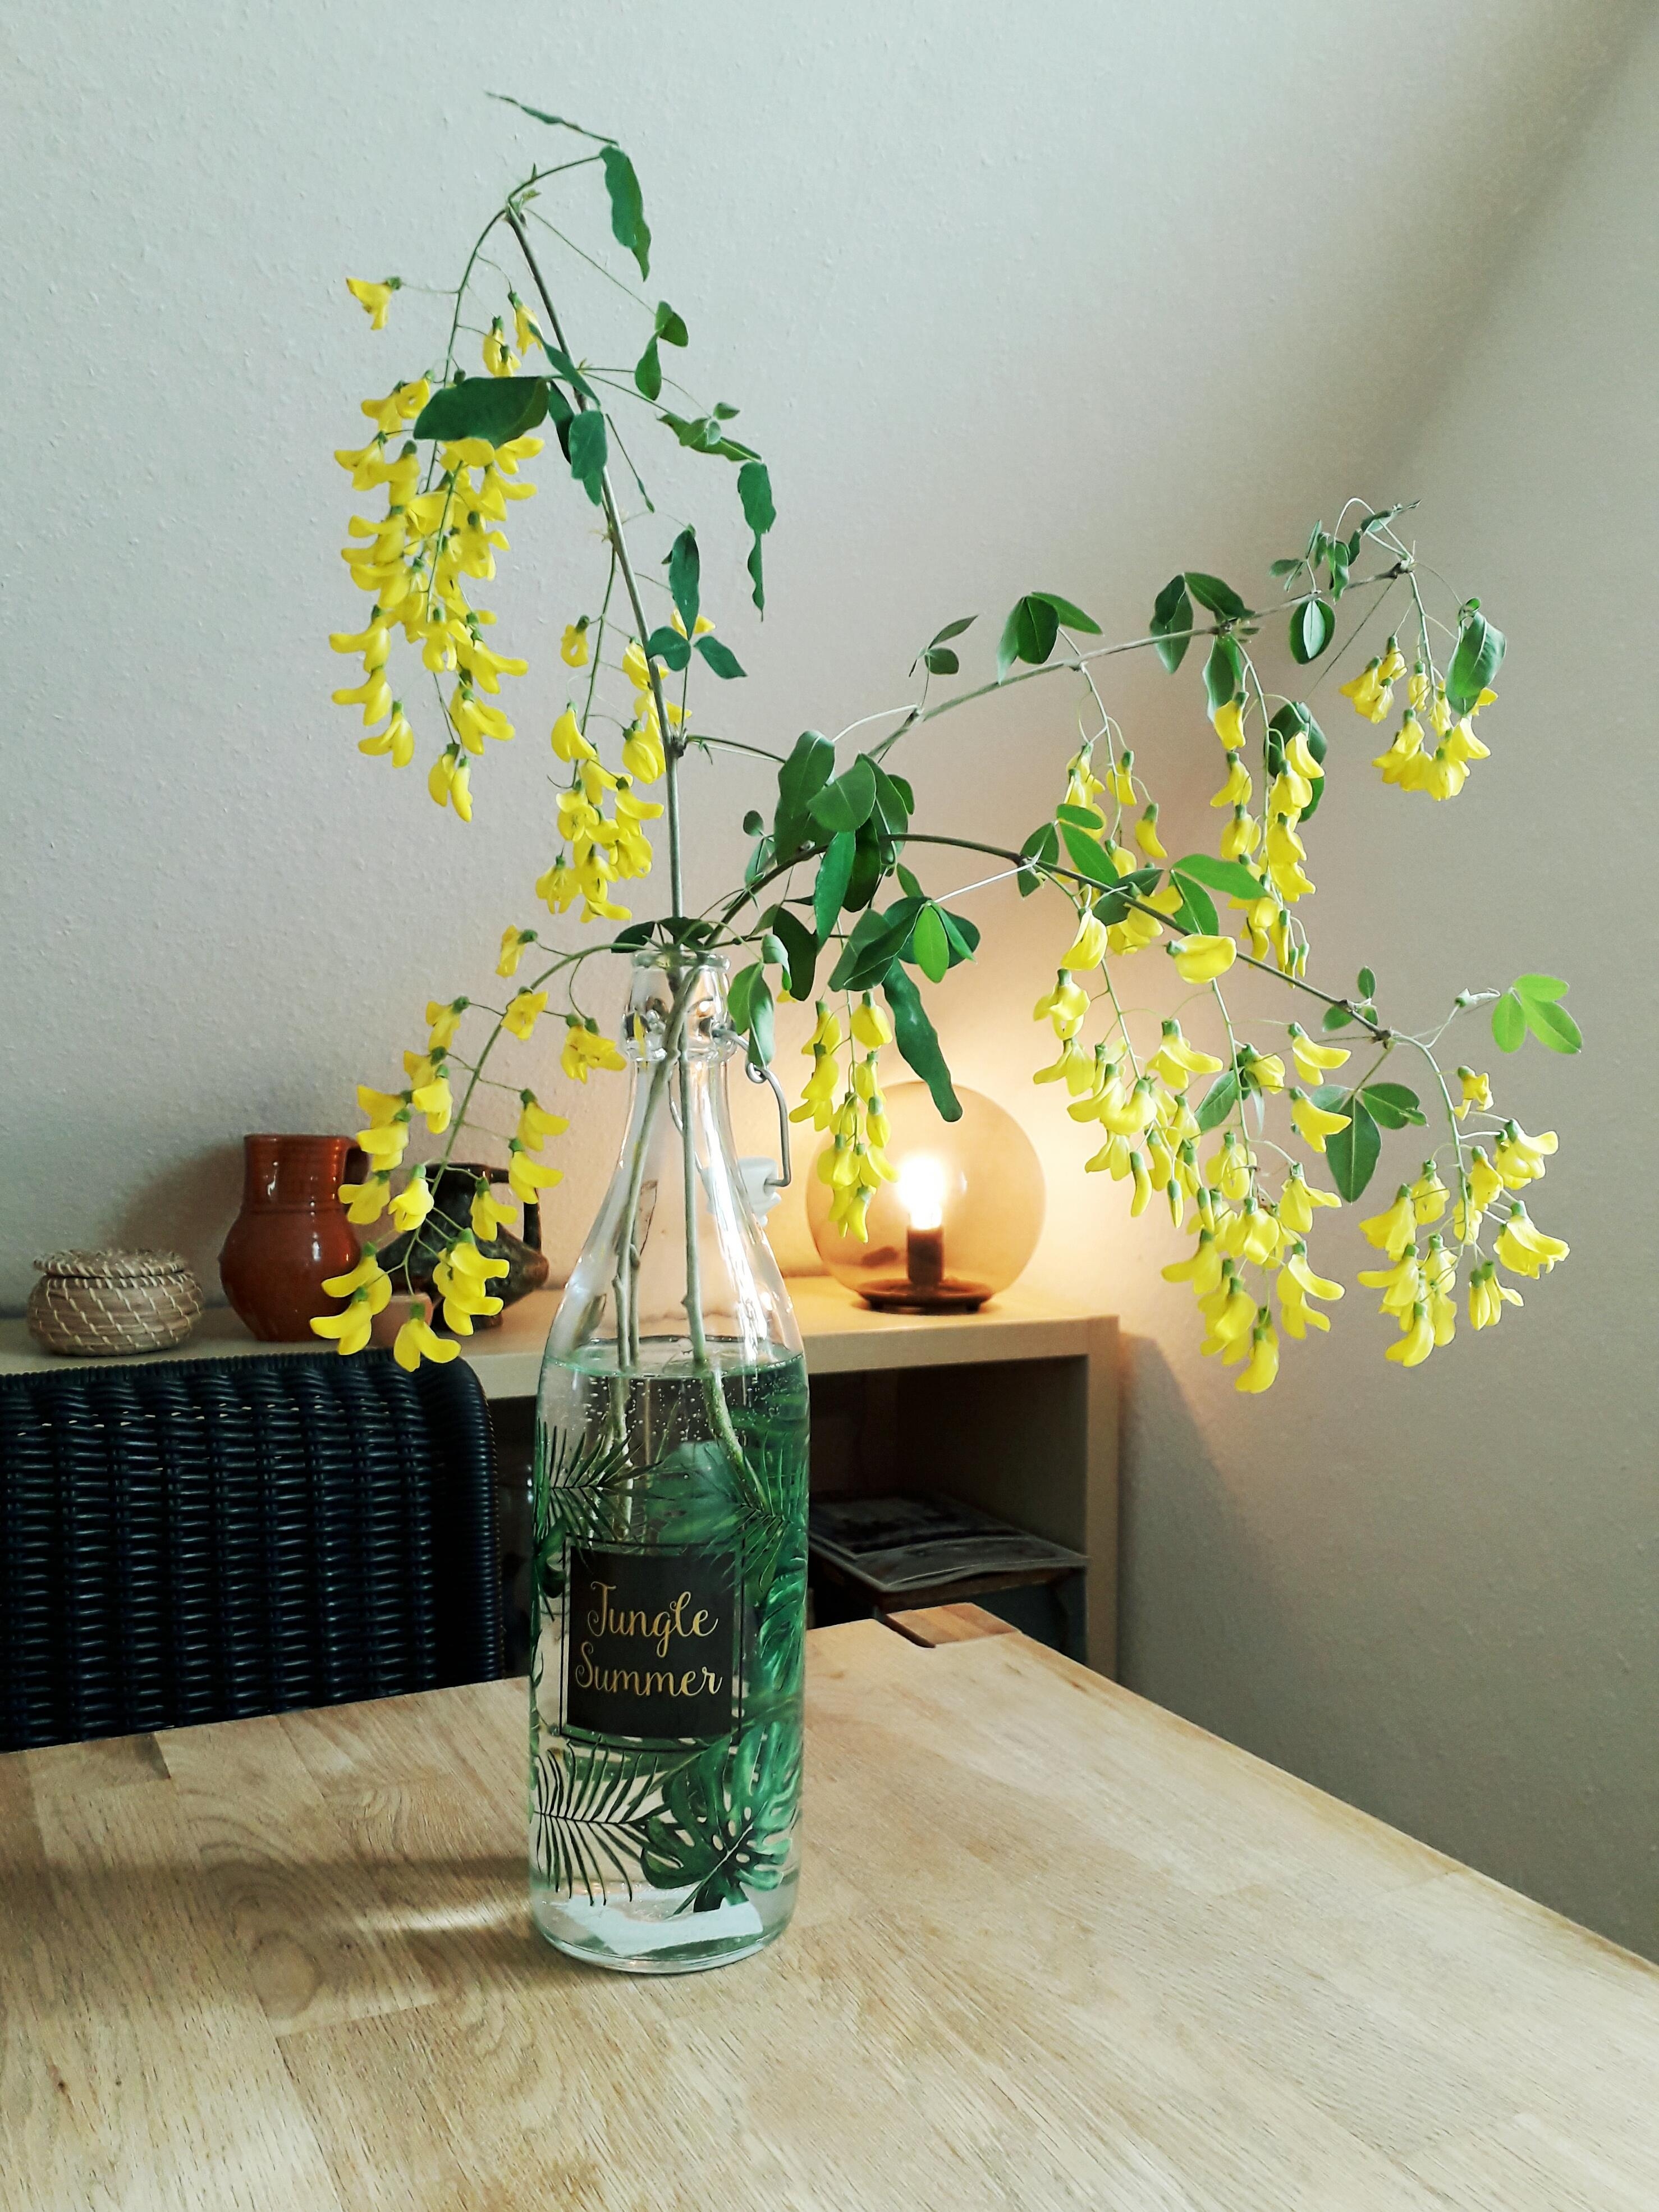  #Gelb #Vase #Glasvase #Esstisch #IkeaFadoLampe #Blumen
#blumendeko #Goldregen
#sommer